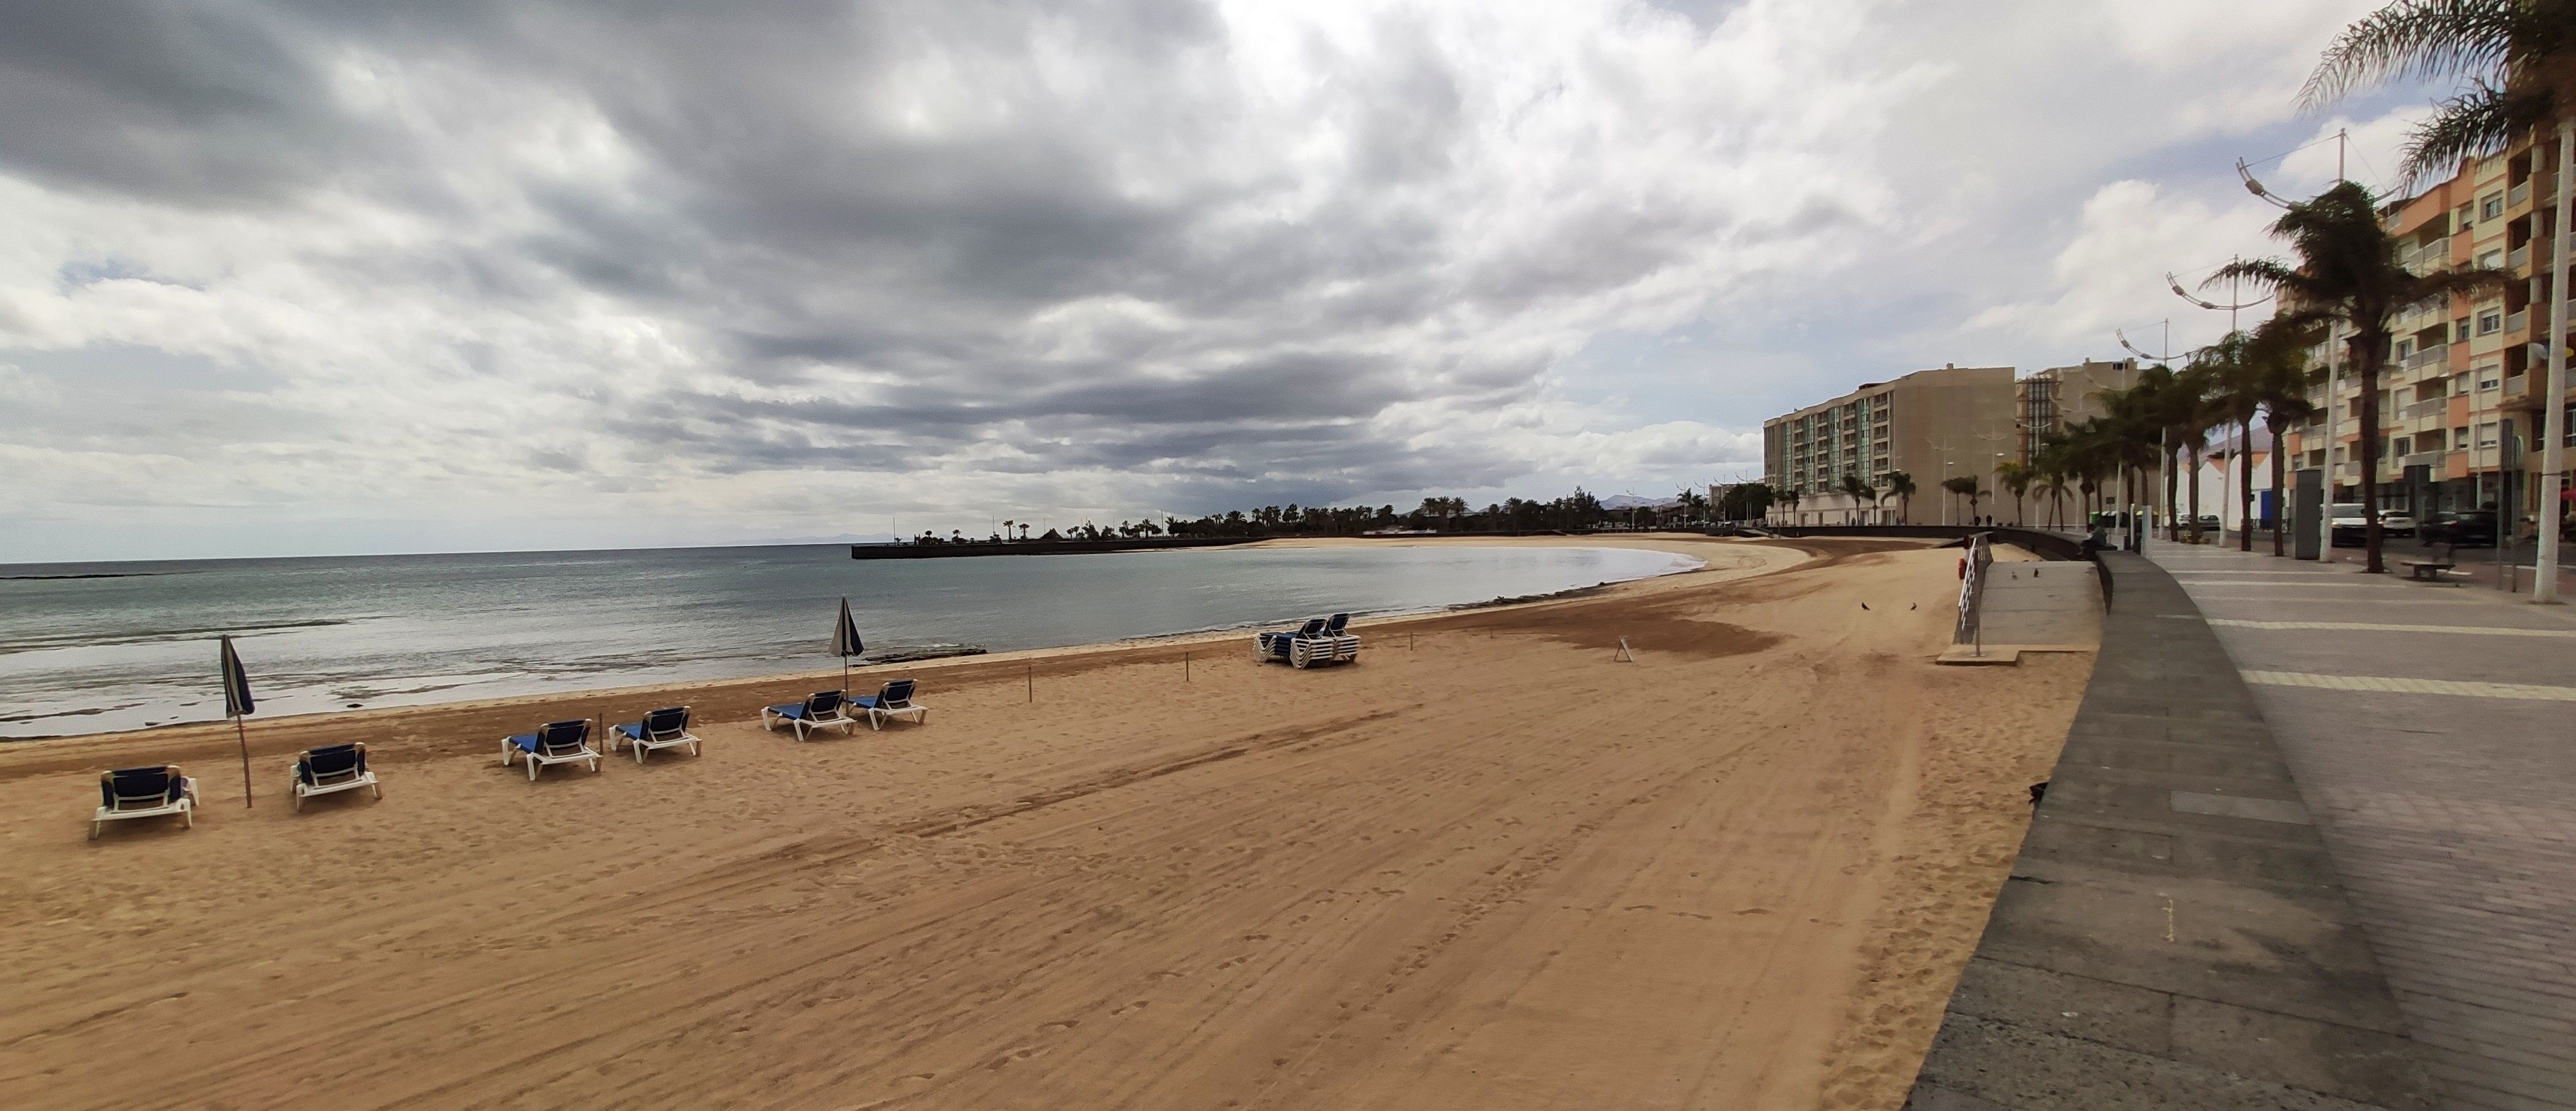 Playa, restaurantes, bares, cines o museos no abrirían hasta la fase 3 de la propuesta de desconfinamiento de Canarias